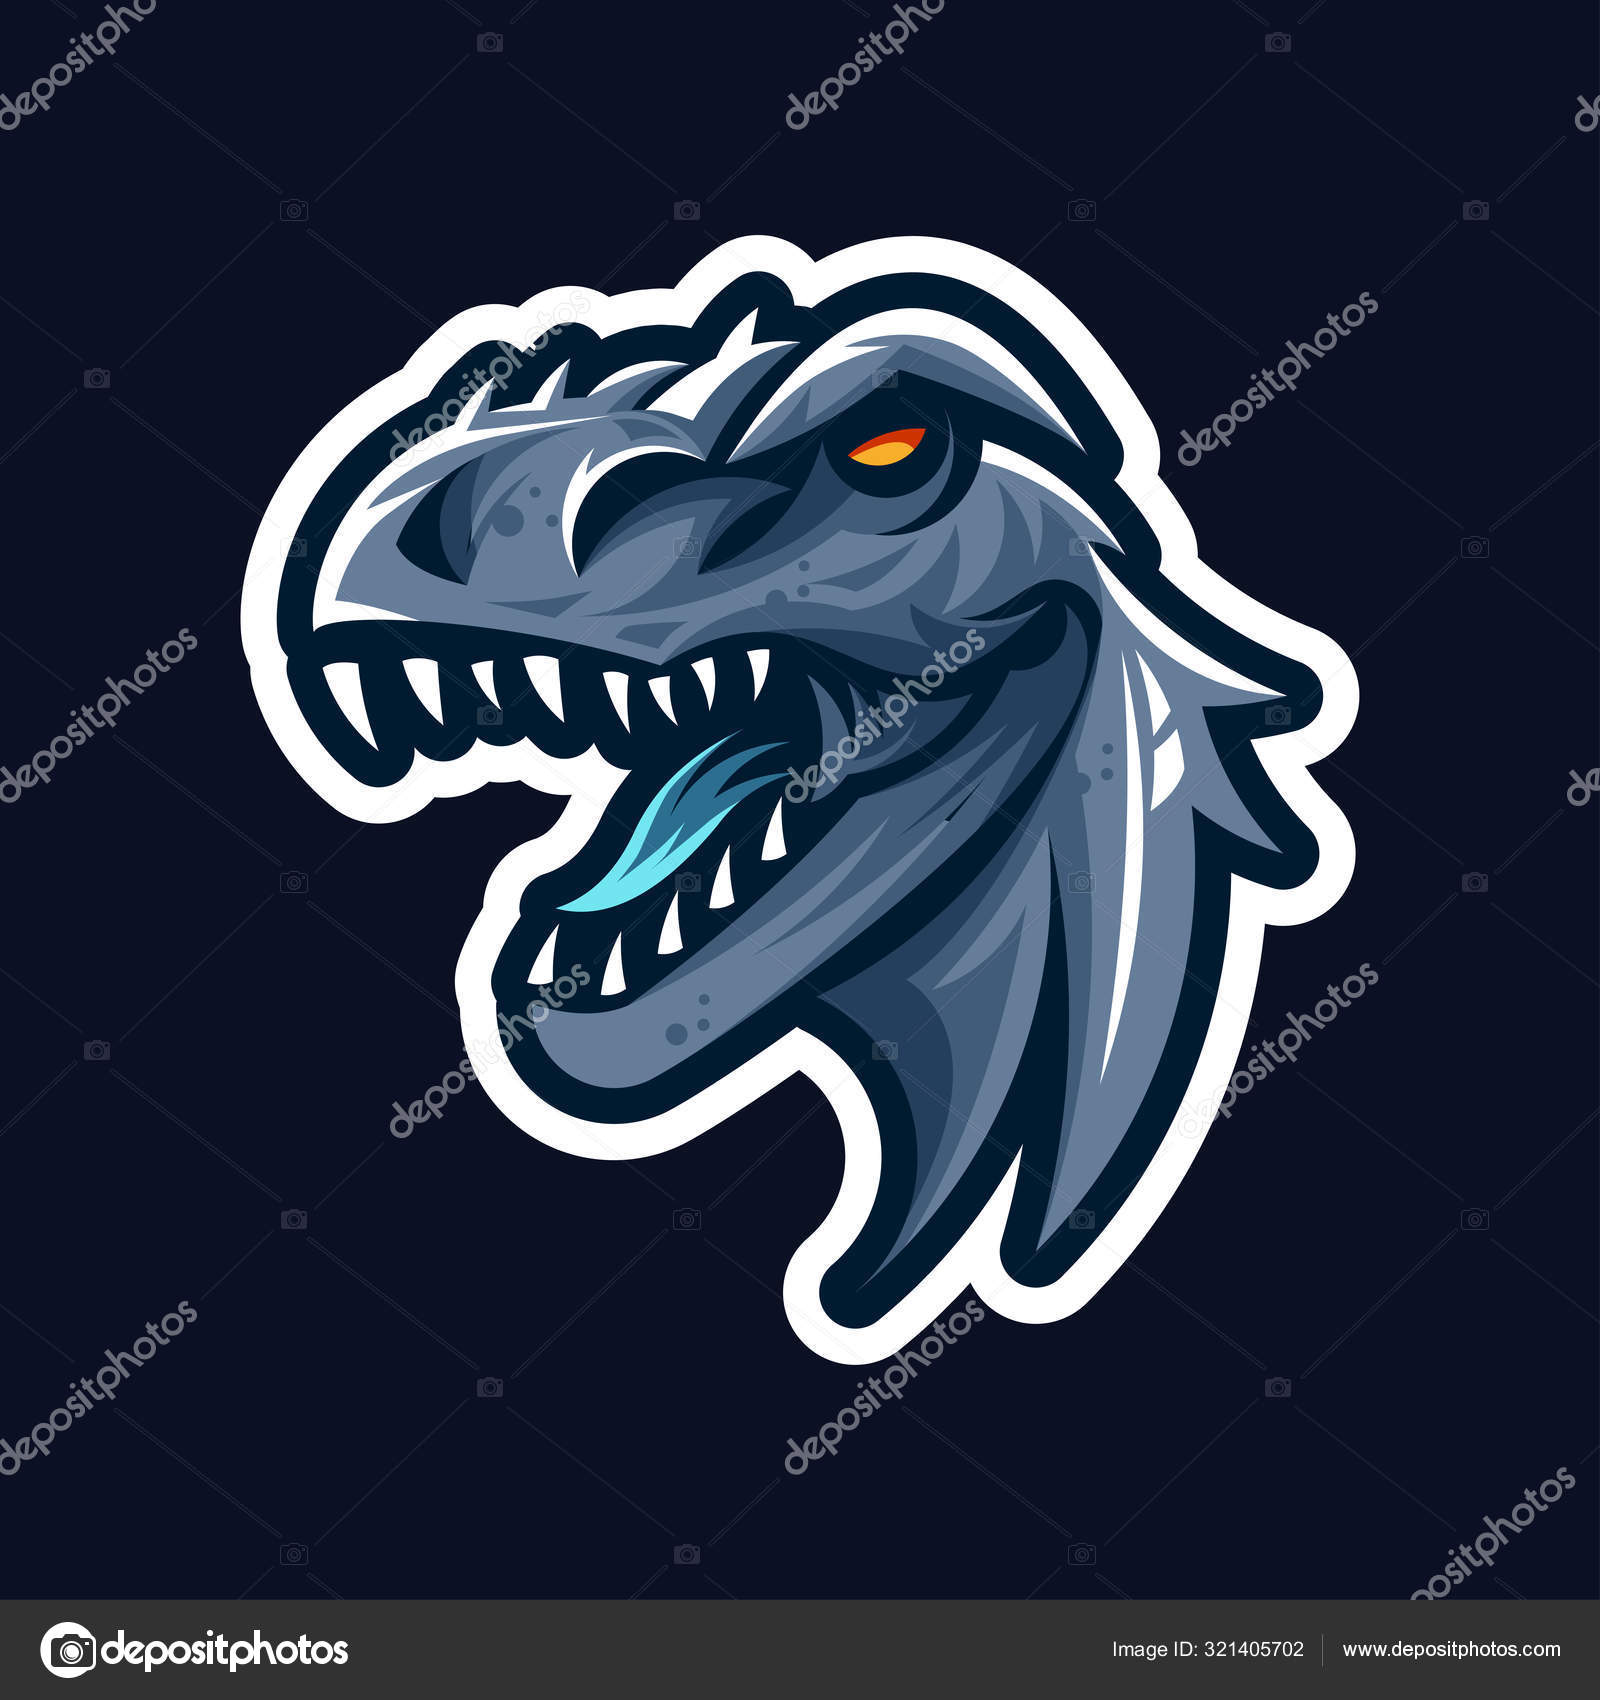 Emoticon Da Cabeça De Dinossauro Verde. Imagem Do ícone De Rabisco  Ilustração do Vetor - Ilustração de mitologia, dinossauro: 207703154